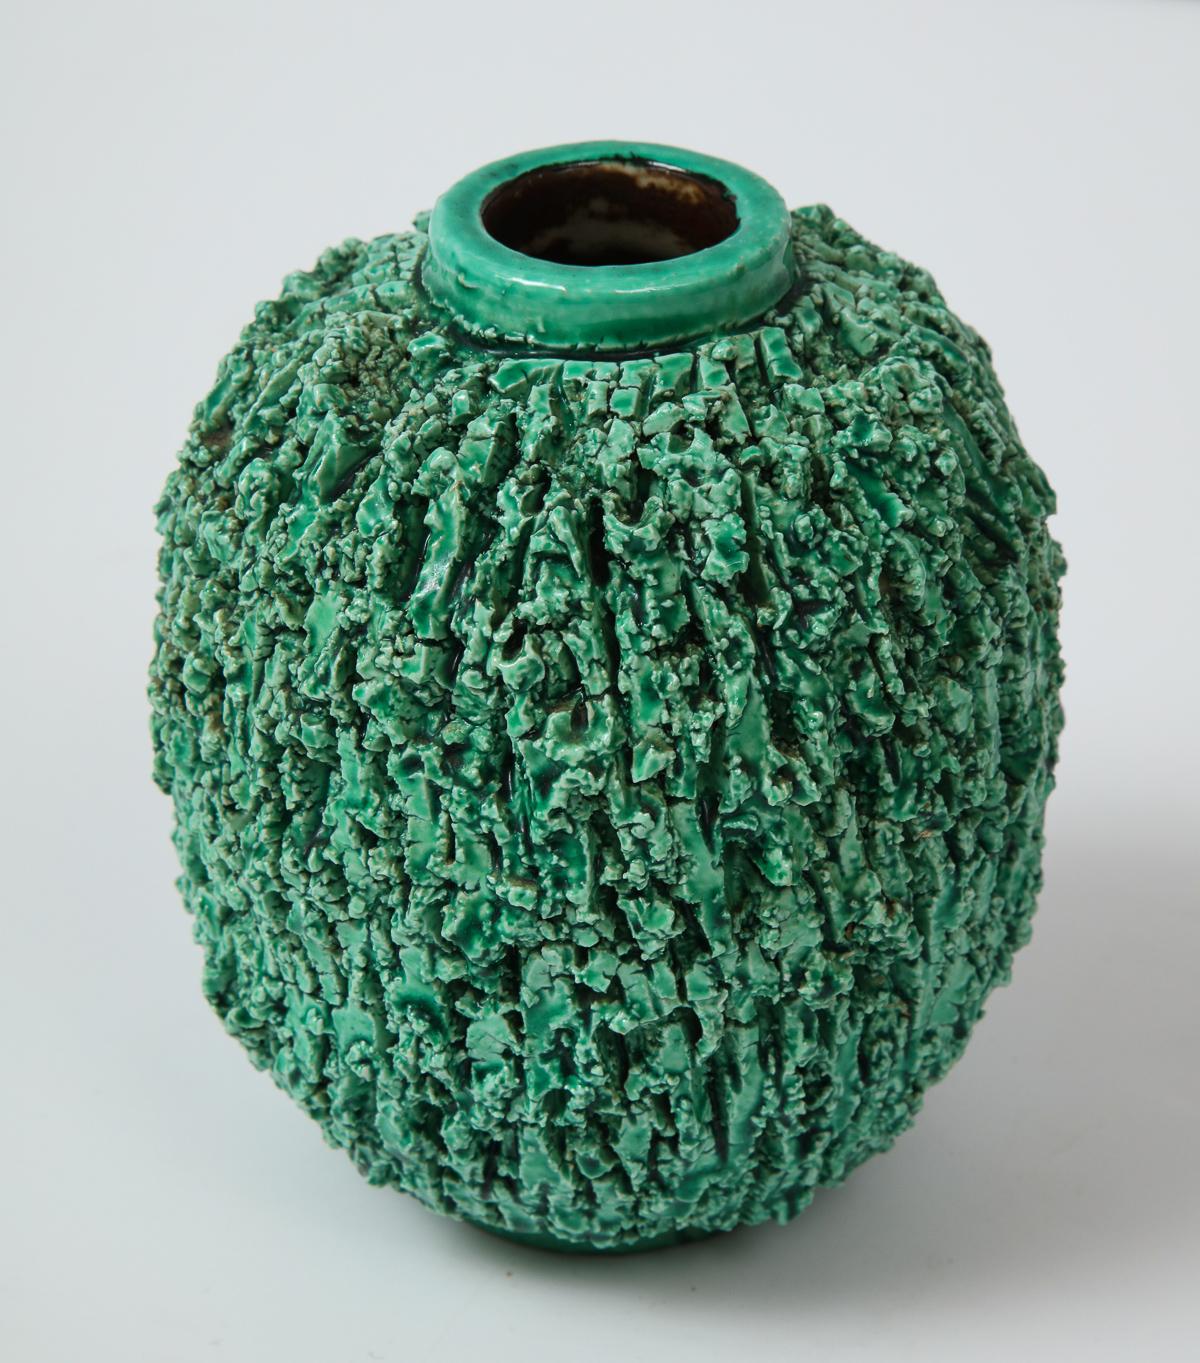 Mid-Century Modern Ceramic Vase by Gunnar Nylund, Scandinavian, circa 1950, Green, 